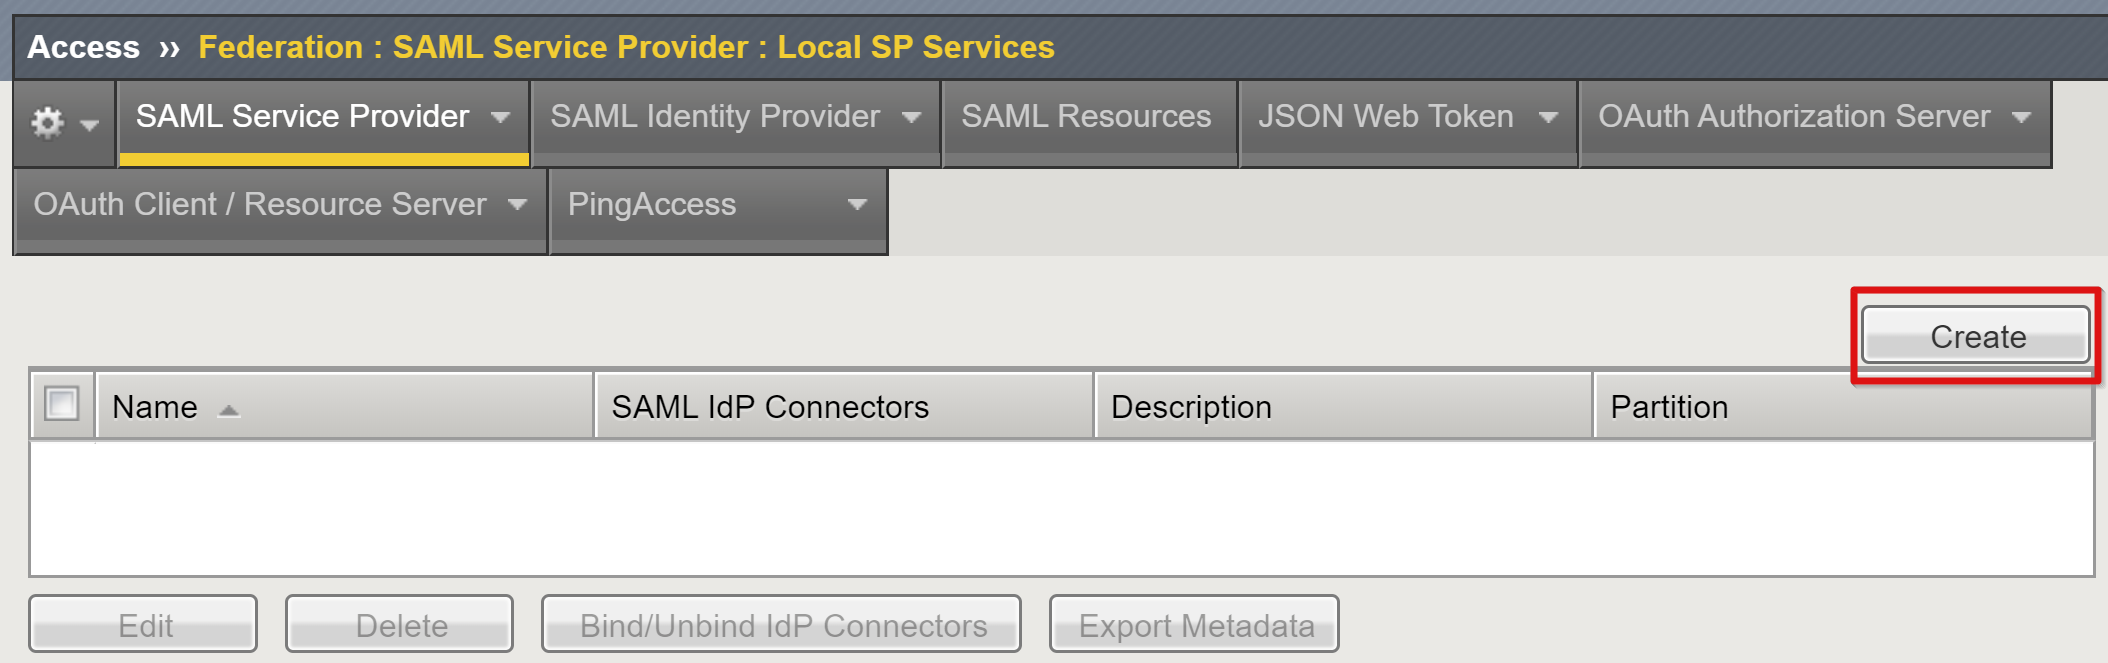 Captura de ecrã a mostrar a opção Criar na página Serviços SP Locais.